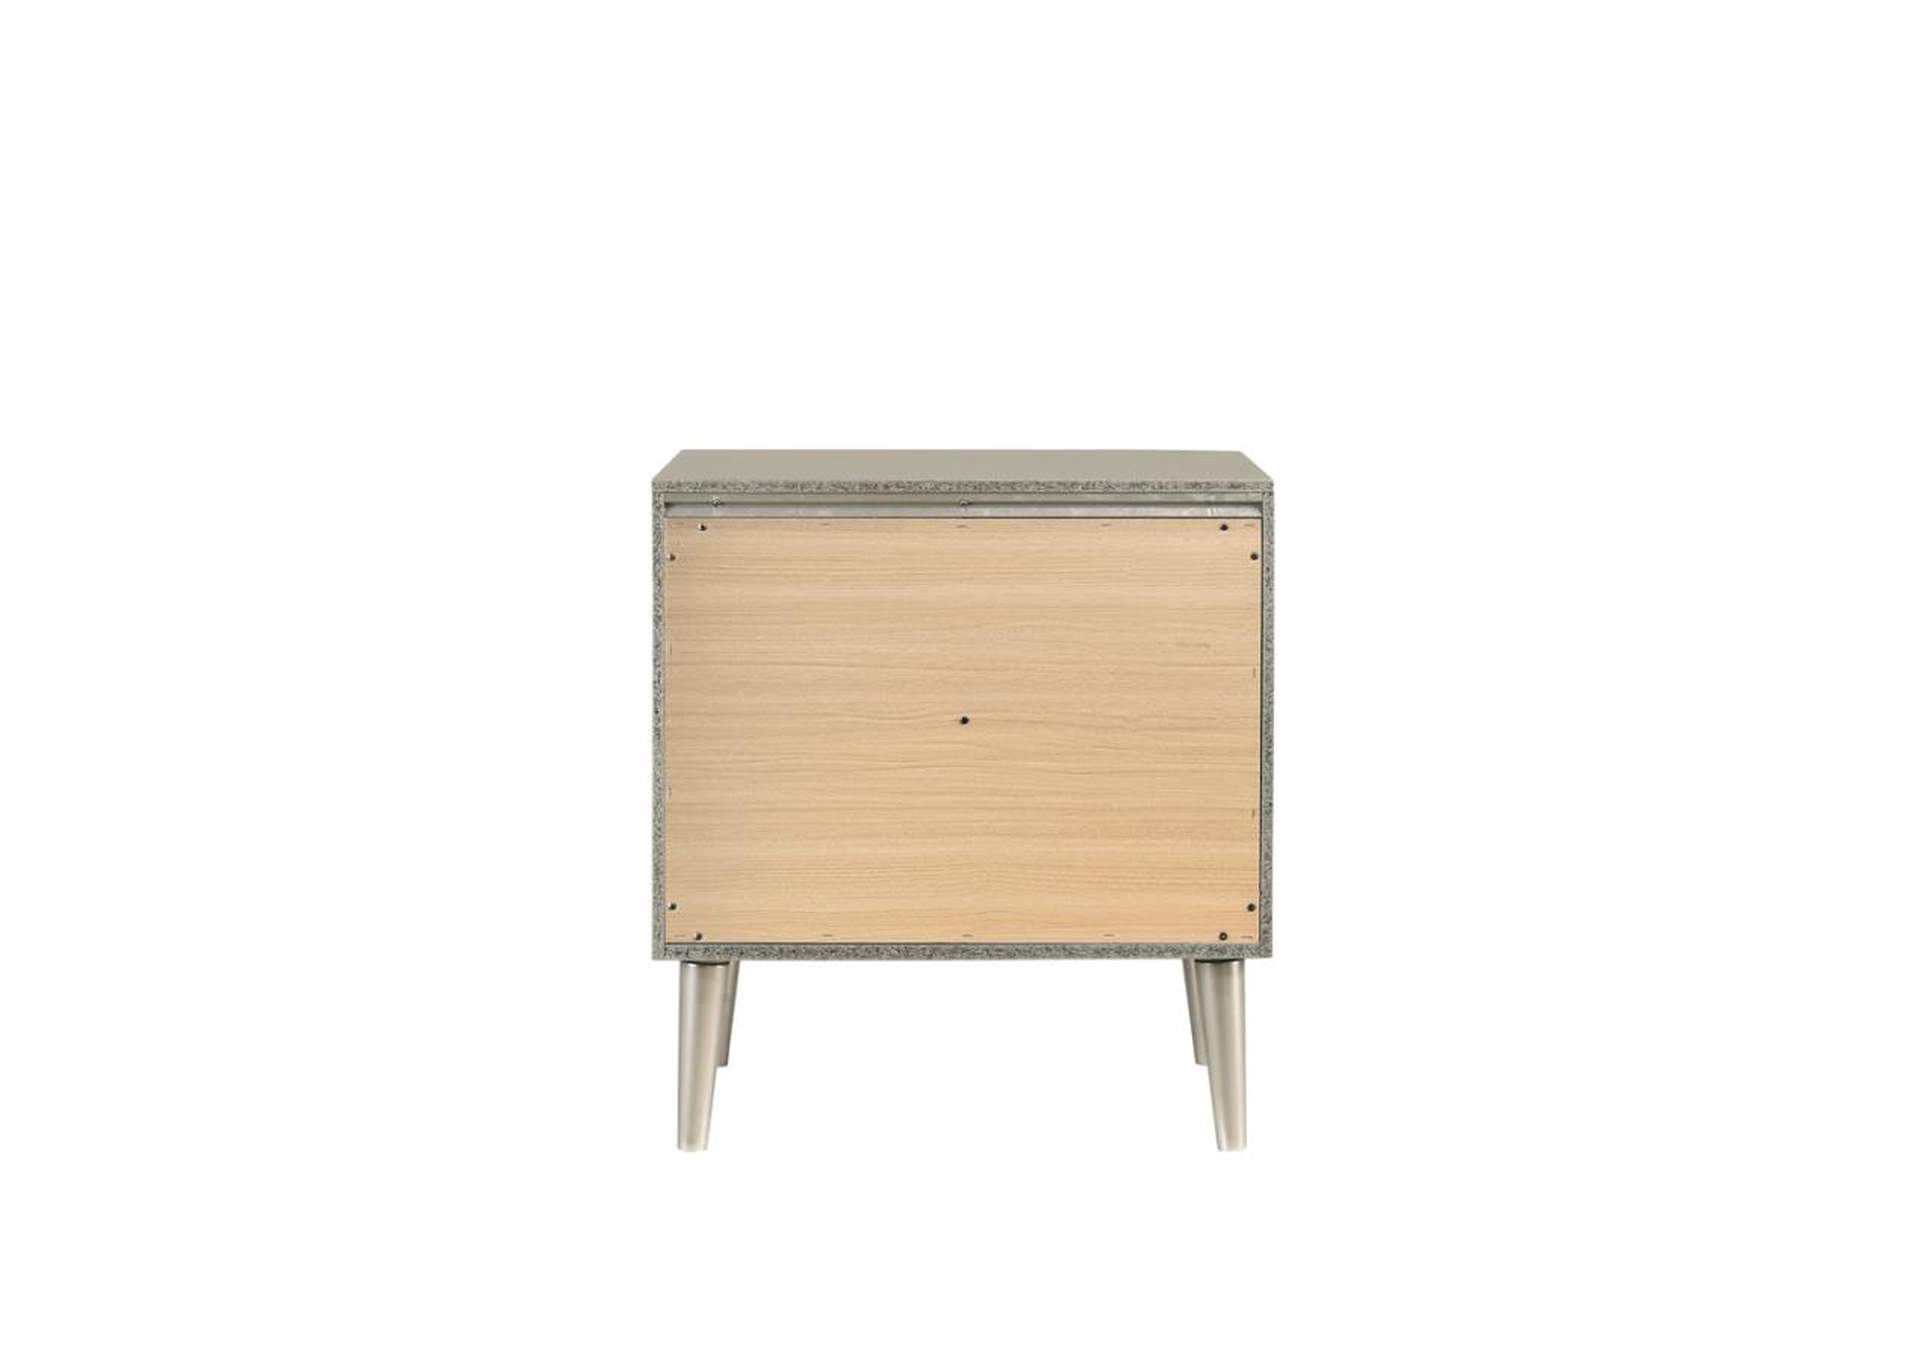 Ramon 2-drawer Nightstand Metallic Sterling,Coaster Furniture